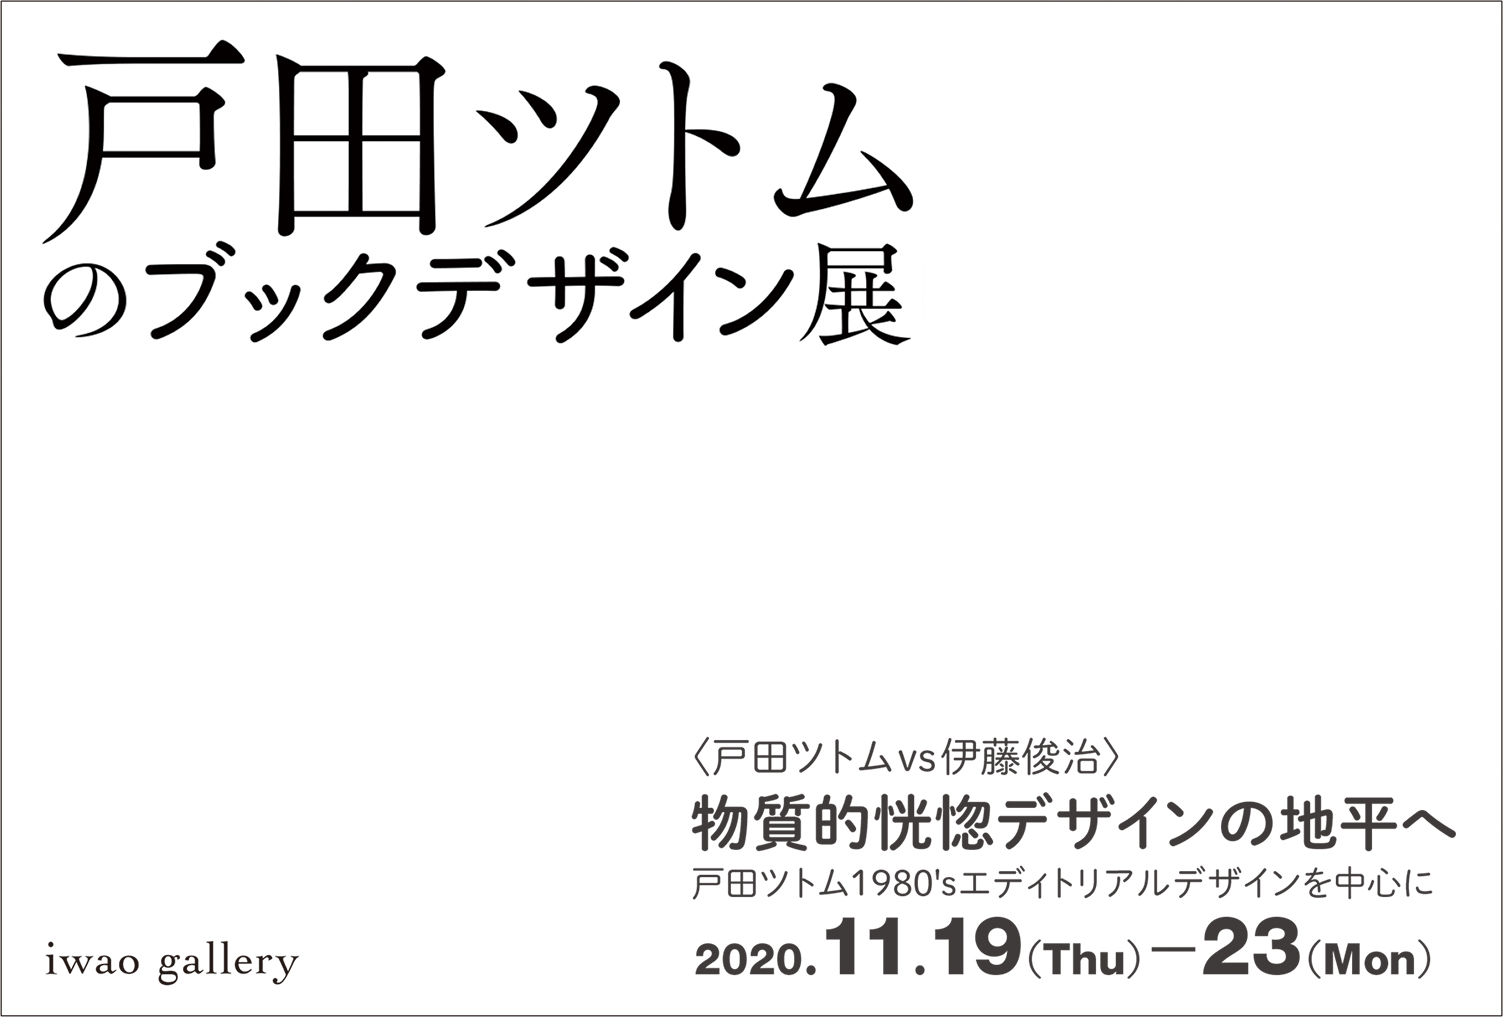 戸田ツトムのブックデザイン展